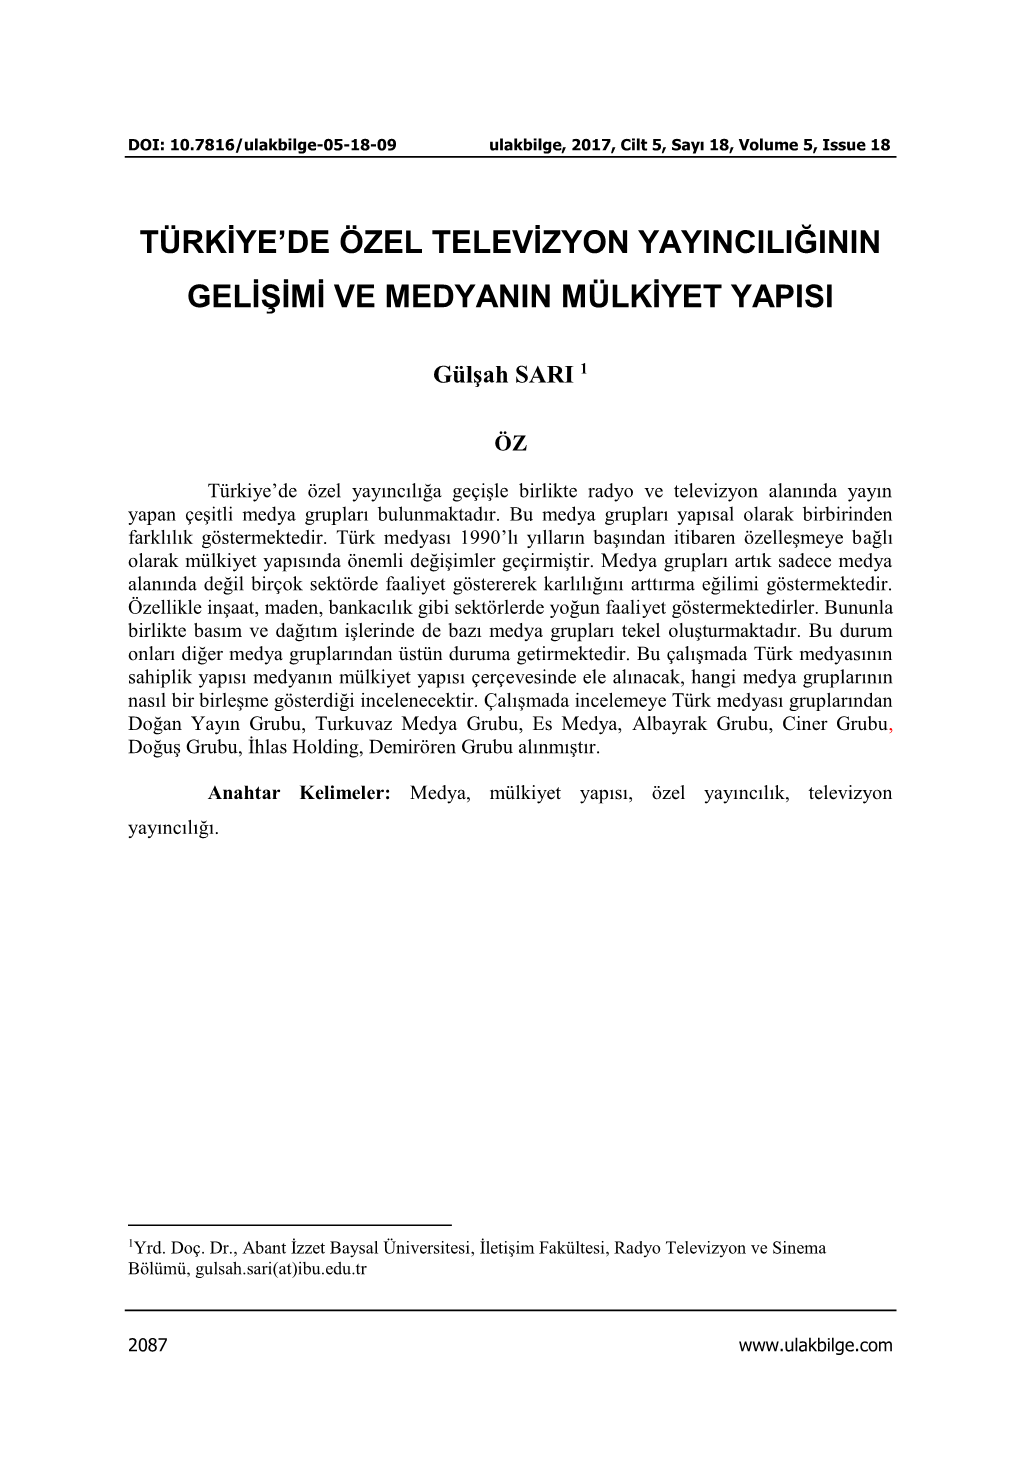 Türkiye'de Özel Televizyon Yayıncılığının Gelişimi Ve Medyanın